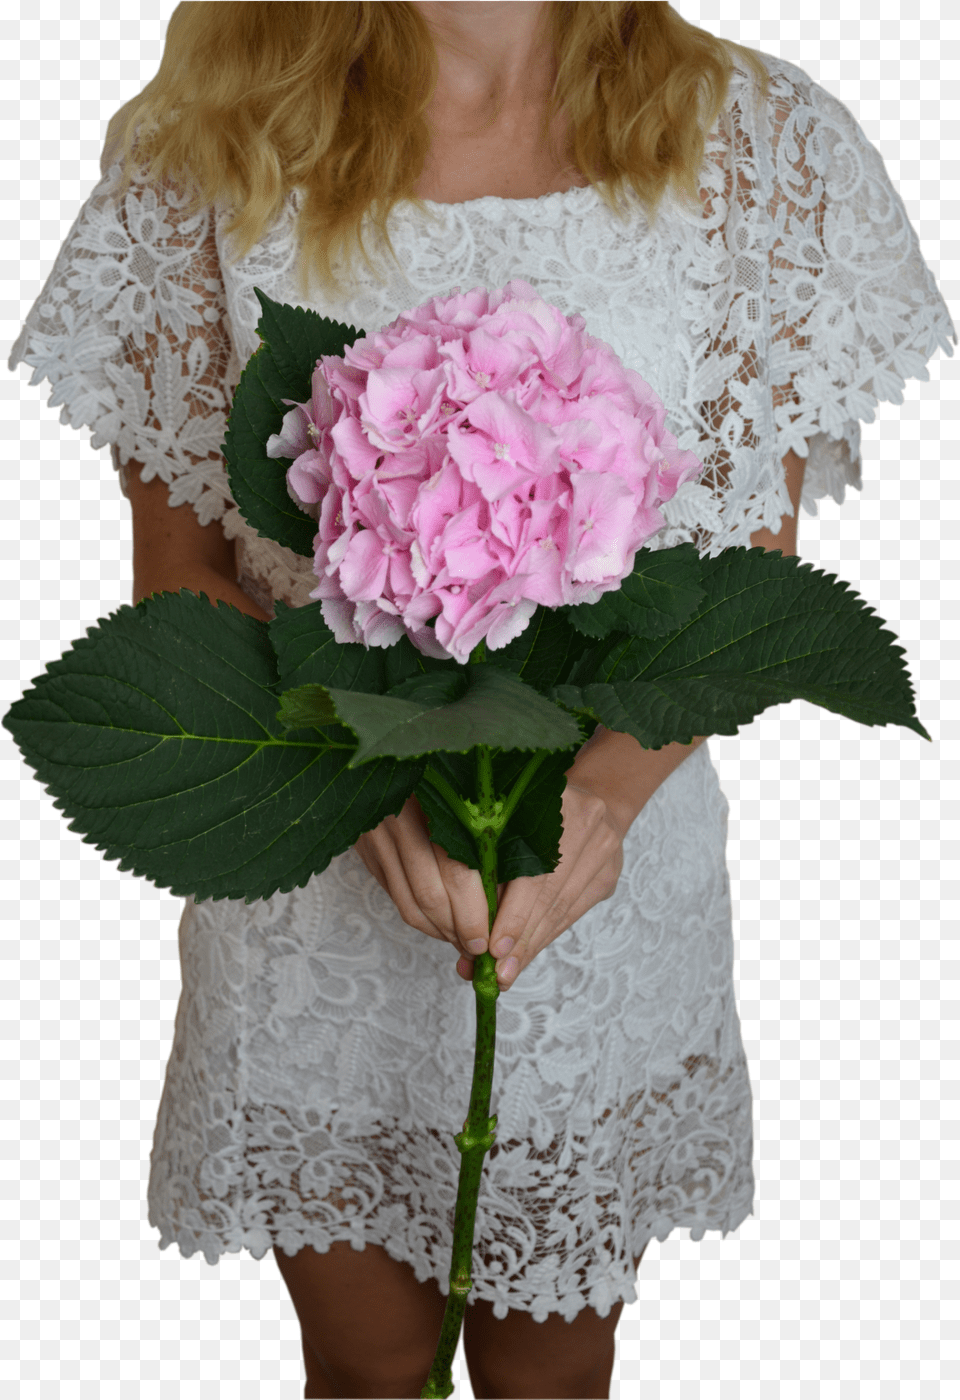 Pink Hydrangea Flower Shop Studio Flores Bouquet, Flower Arrangement, Flower Bouquet, Plant, Adult Free Transparent Png